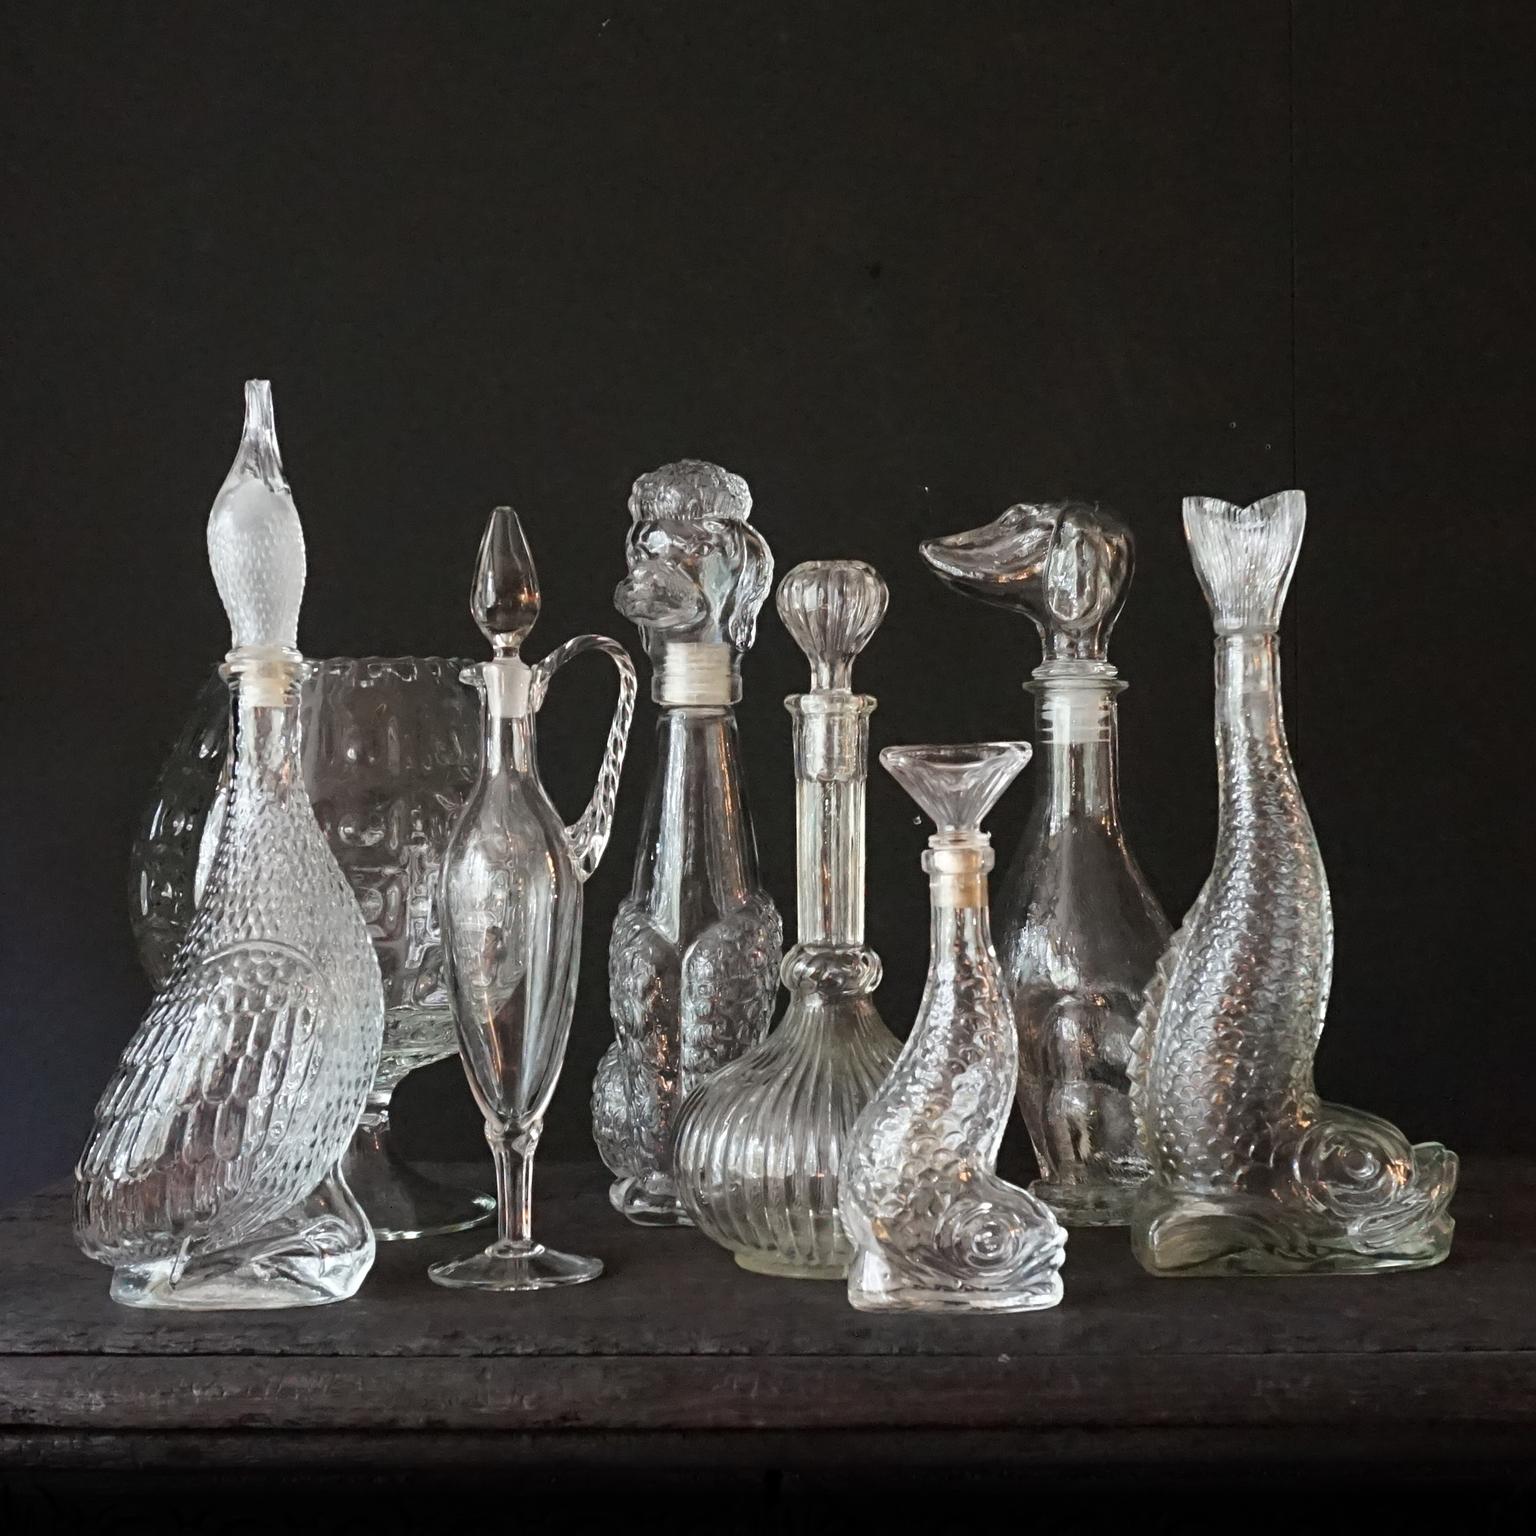 Sehr dekoratives, seltenes Klarglas-Set aus acht unterschiedlich großen italienischen Pressglasflaschen.
Dieses Set besteht fast ausschließlich aus Tieren, einer Ente, einem Pudel, einem Dackel und zwei Fischen. Aber auch ein gepresstes